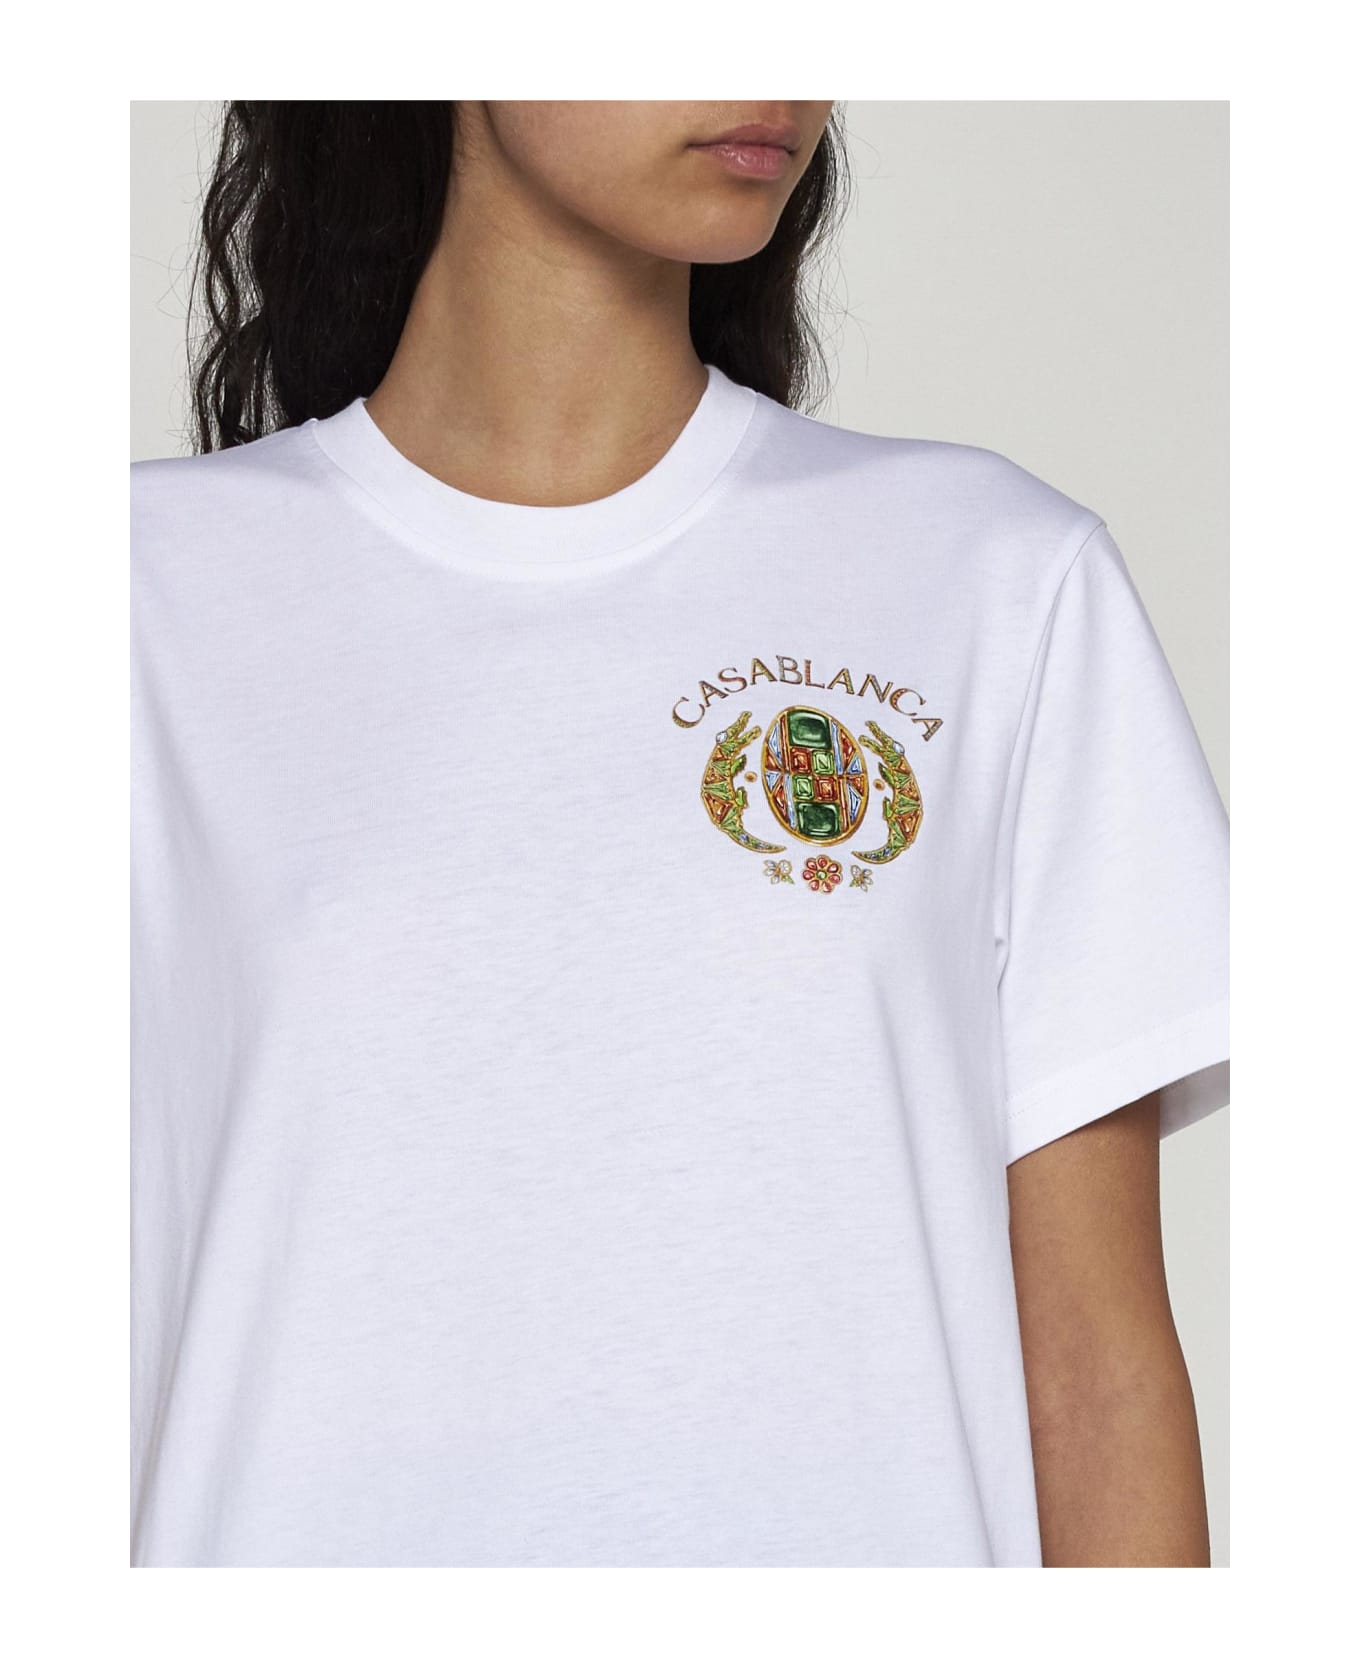 Casablanca Joyaux D'afrique Tennis Club Cotton T-shirt - Joyaux d'afrique tennis club Tシャツ